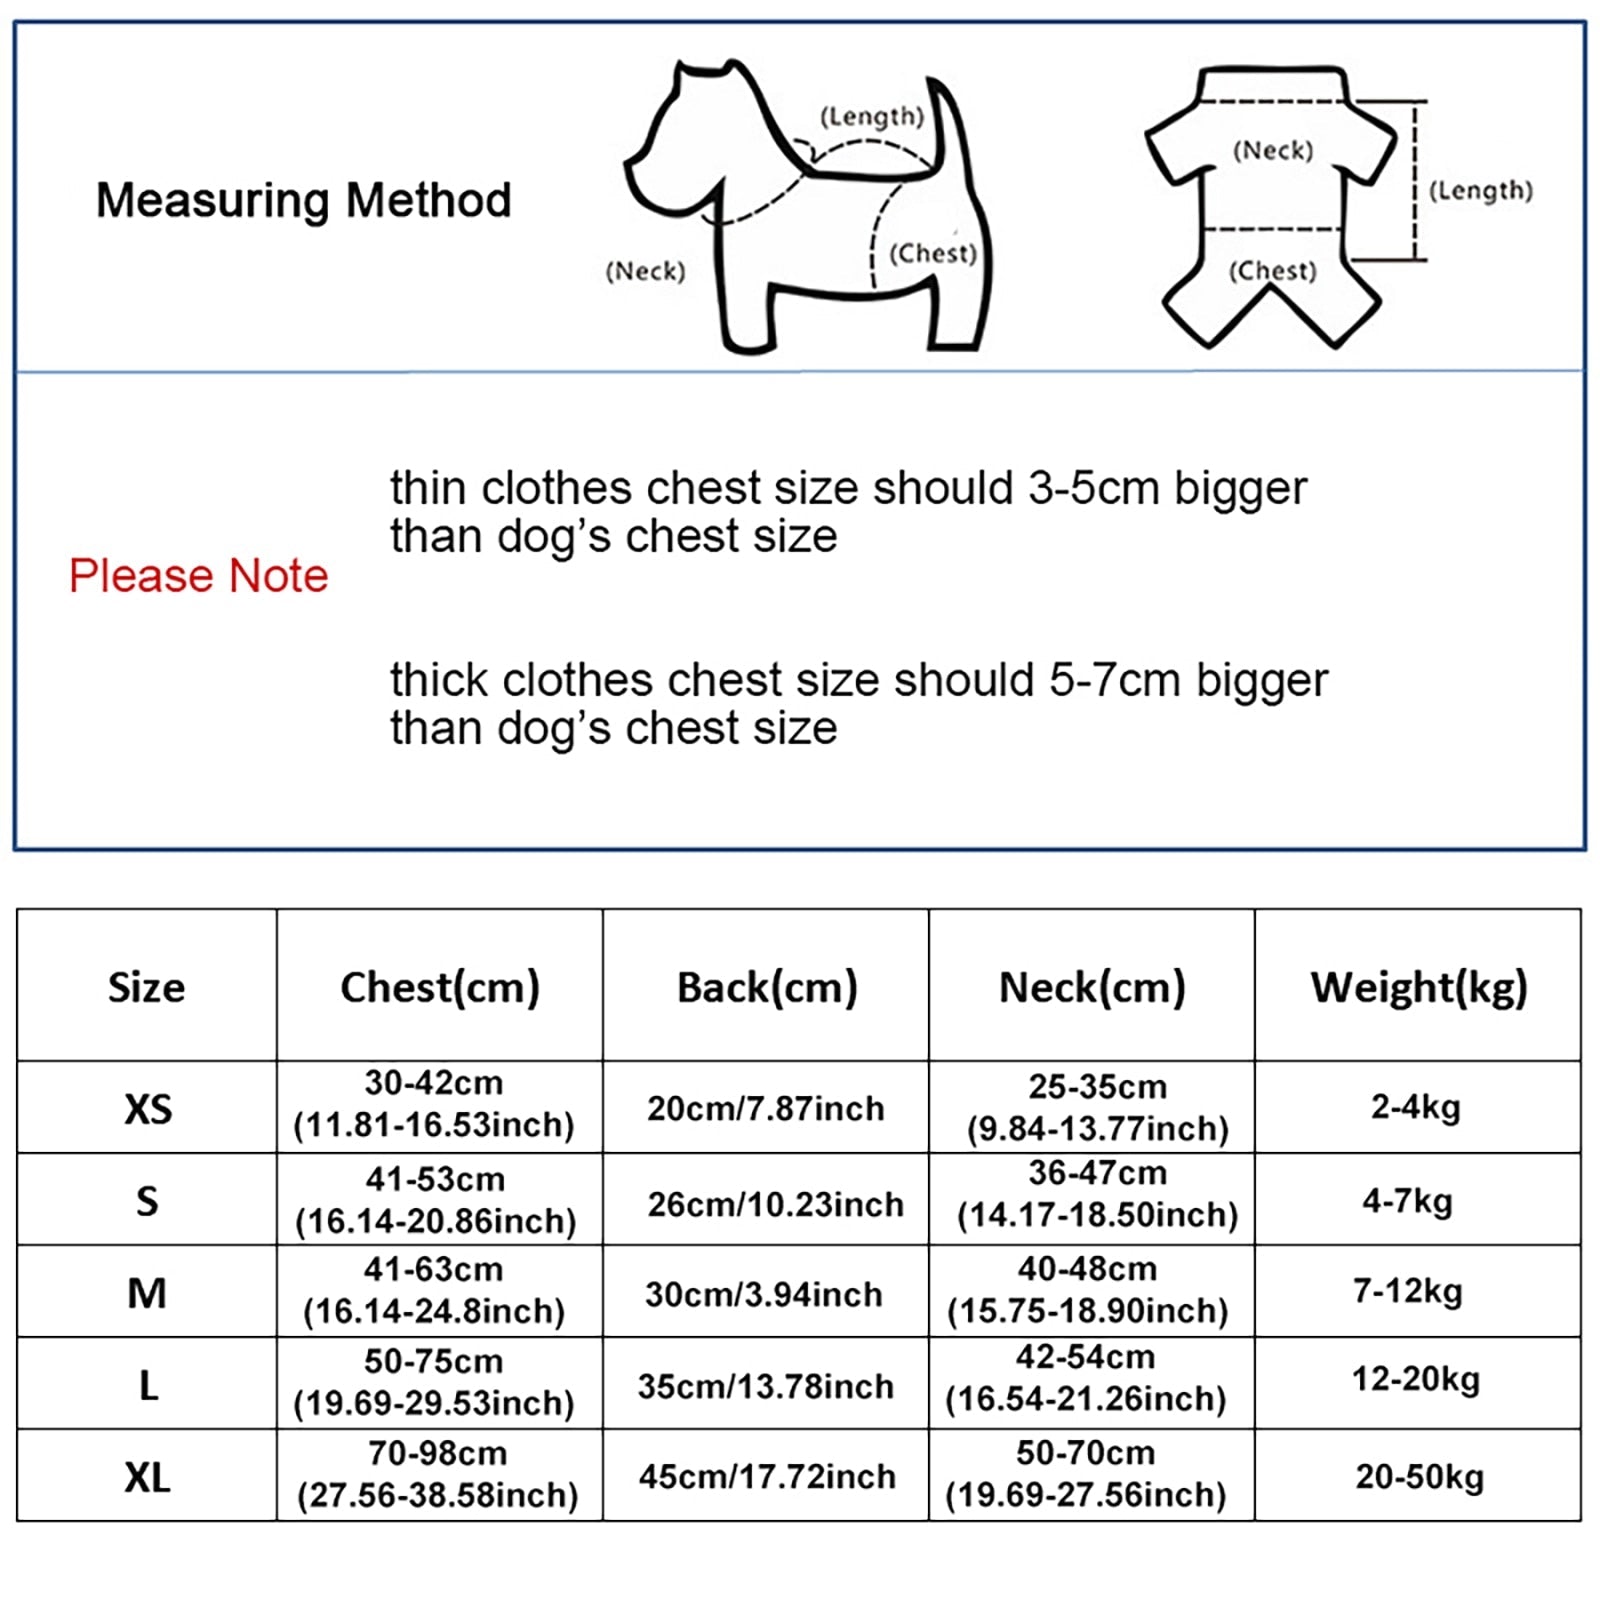 Adjustable Shark Vests For Dog - Pets and More